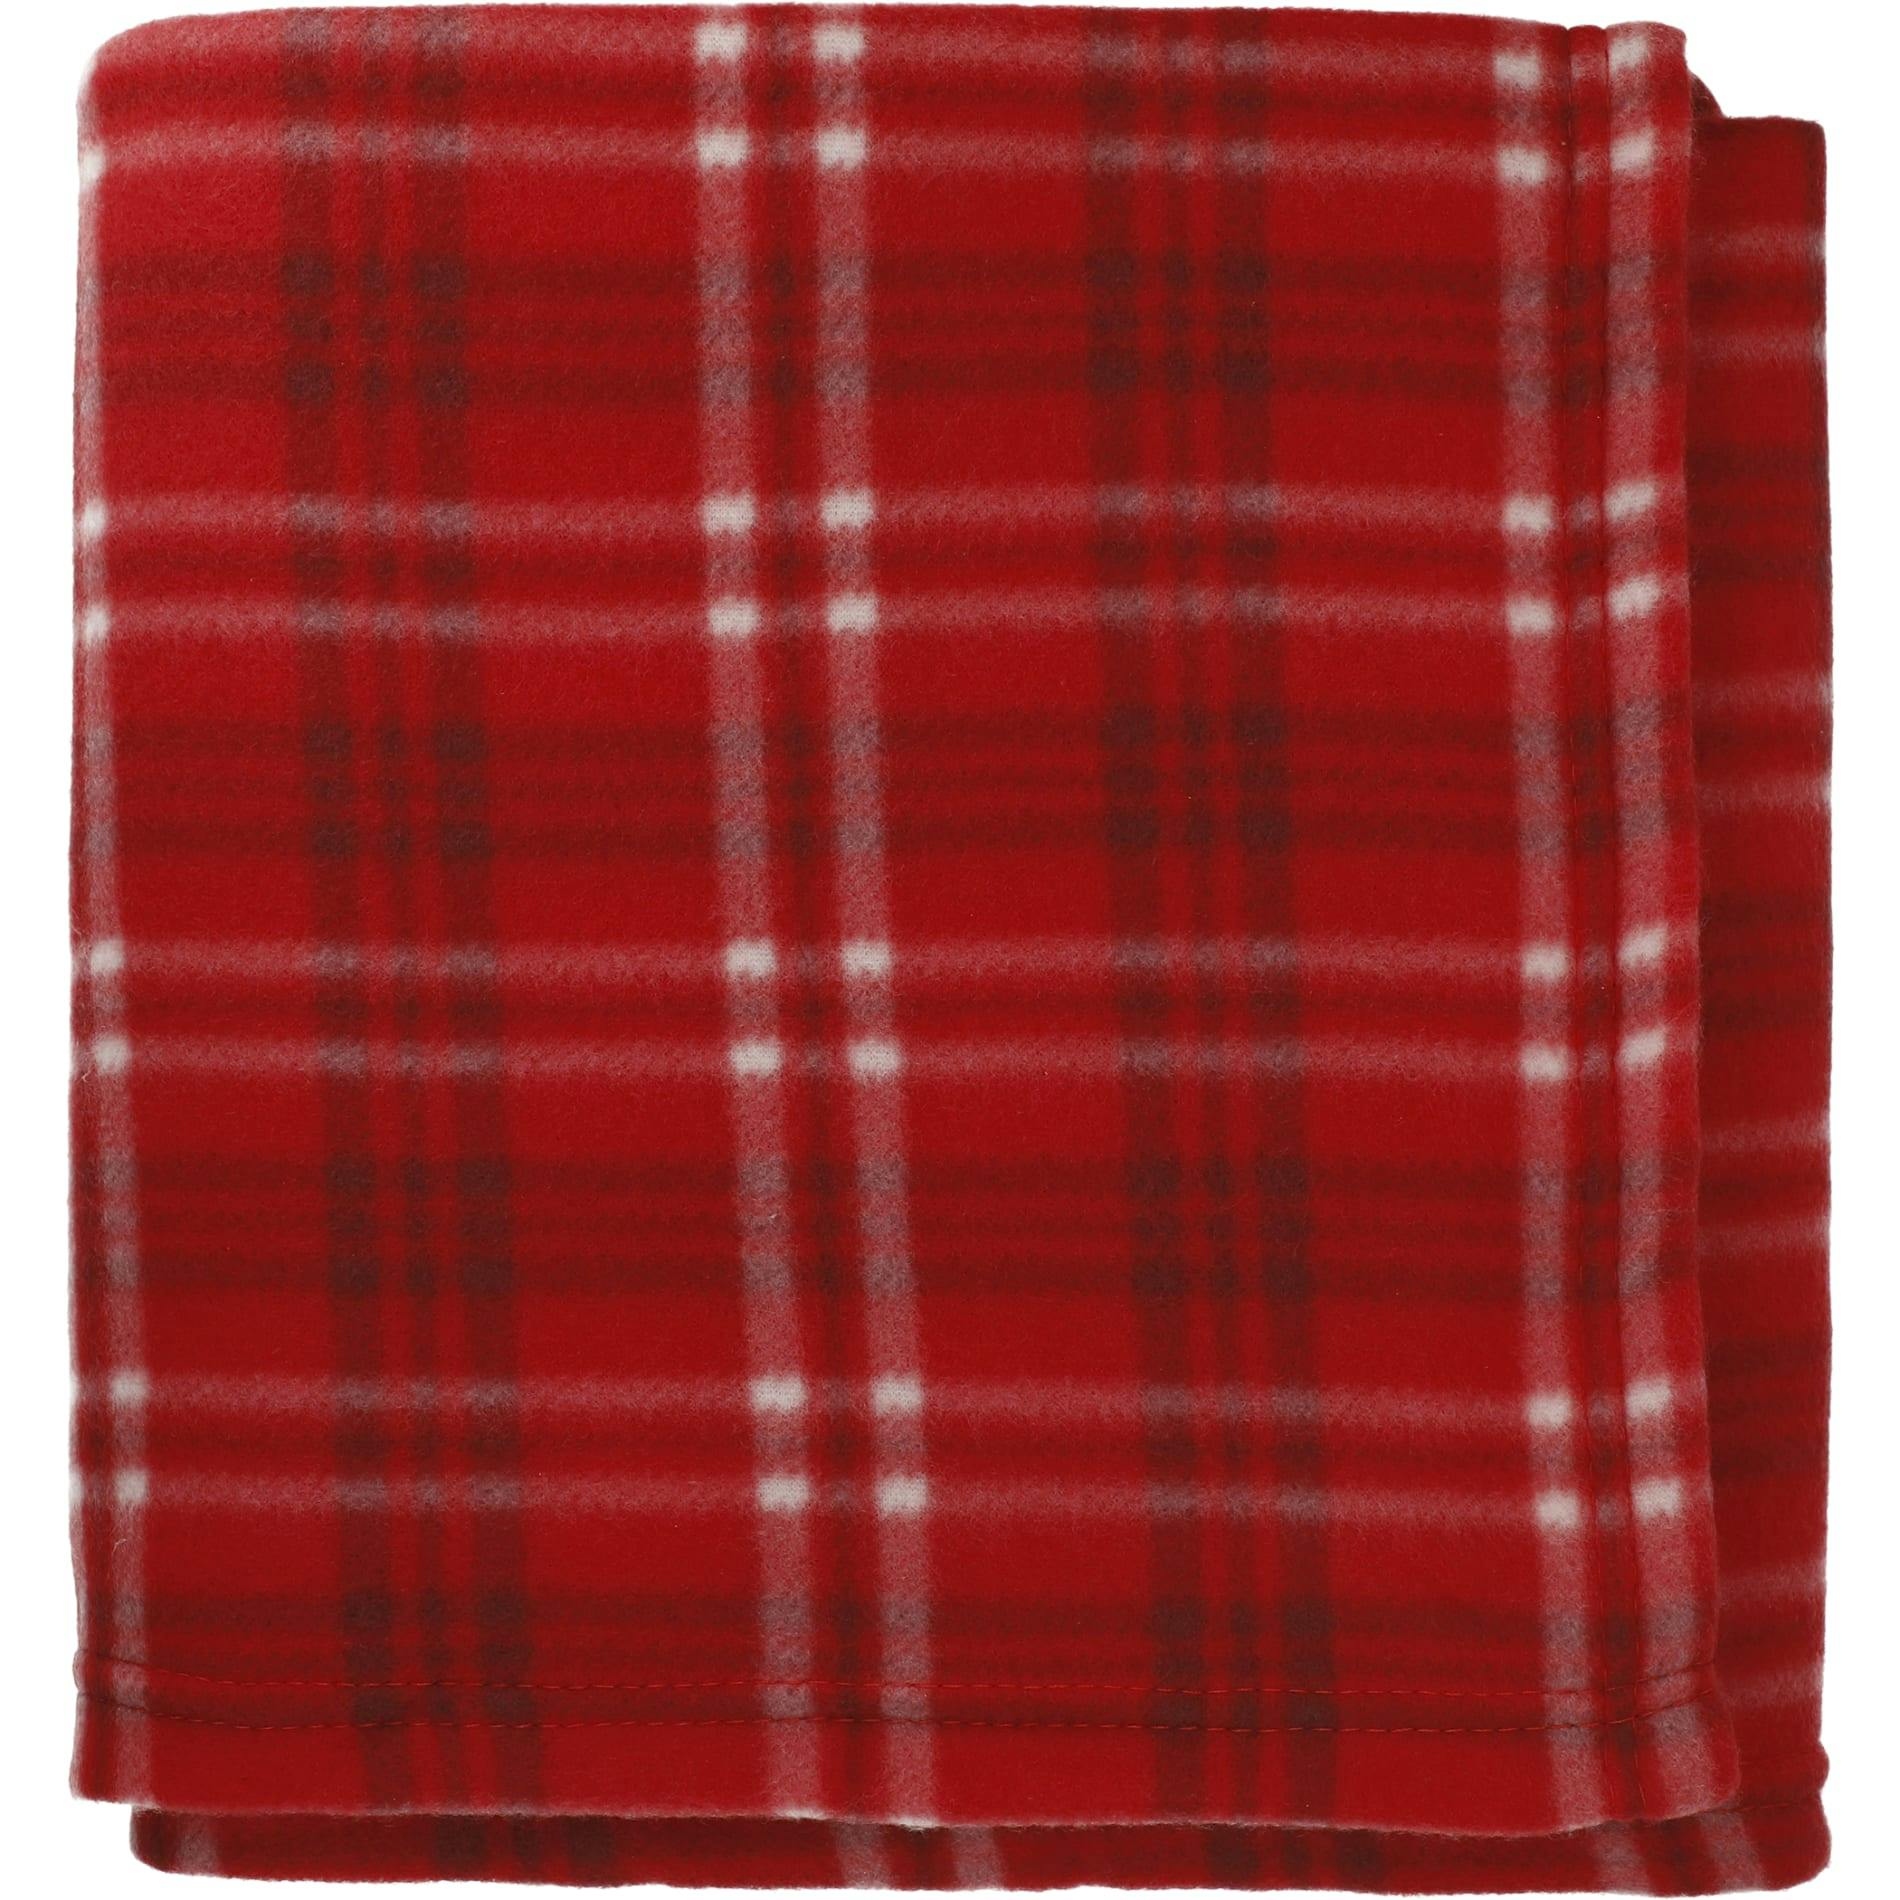 Plaid Fleece Blanket - additional Image 2